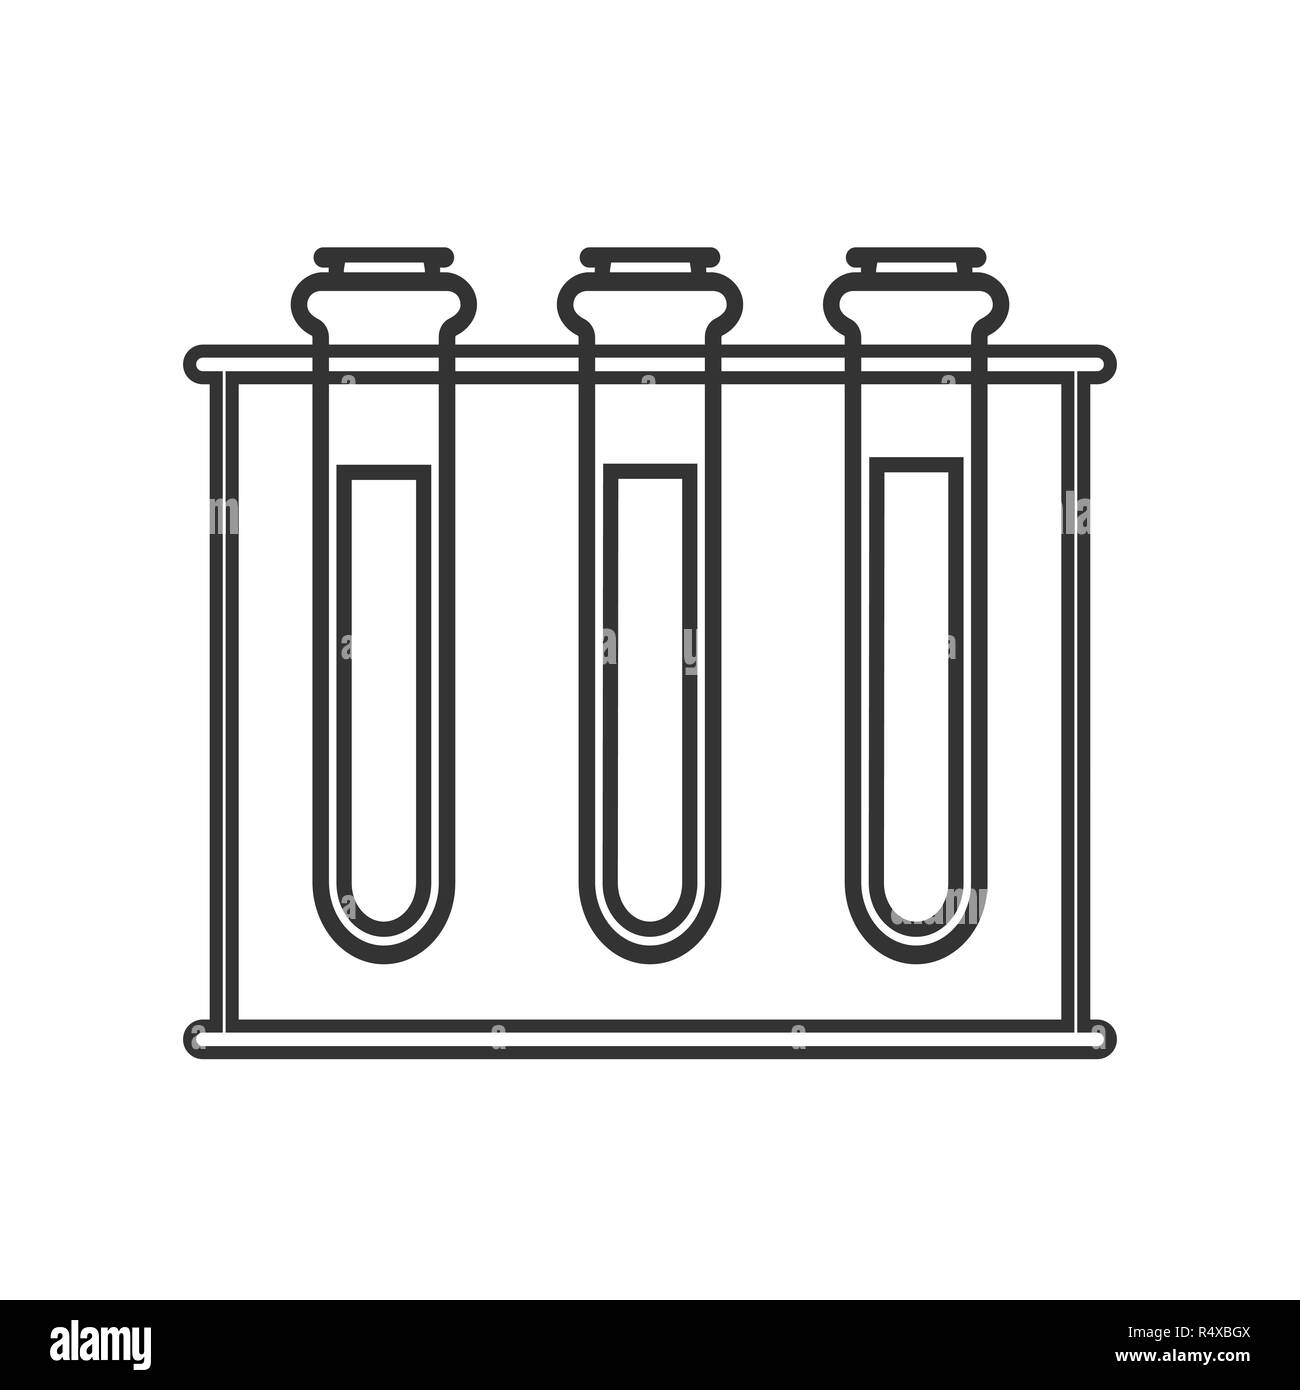 Tubo de ensayo Imágenes de stock en blanco y negro - Alamy